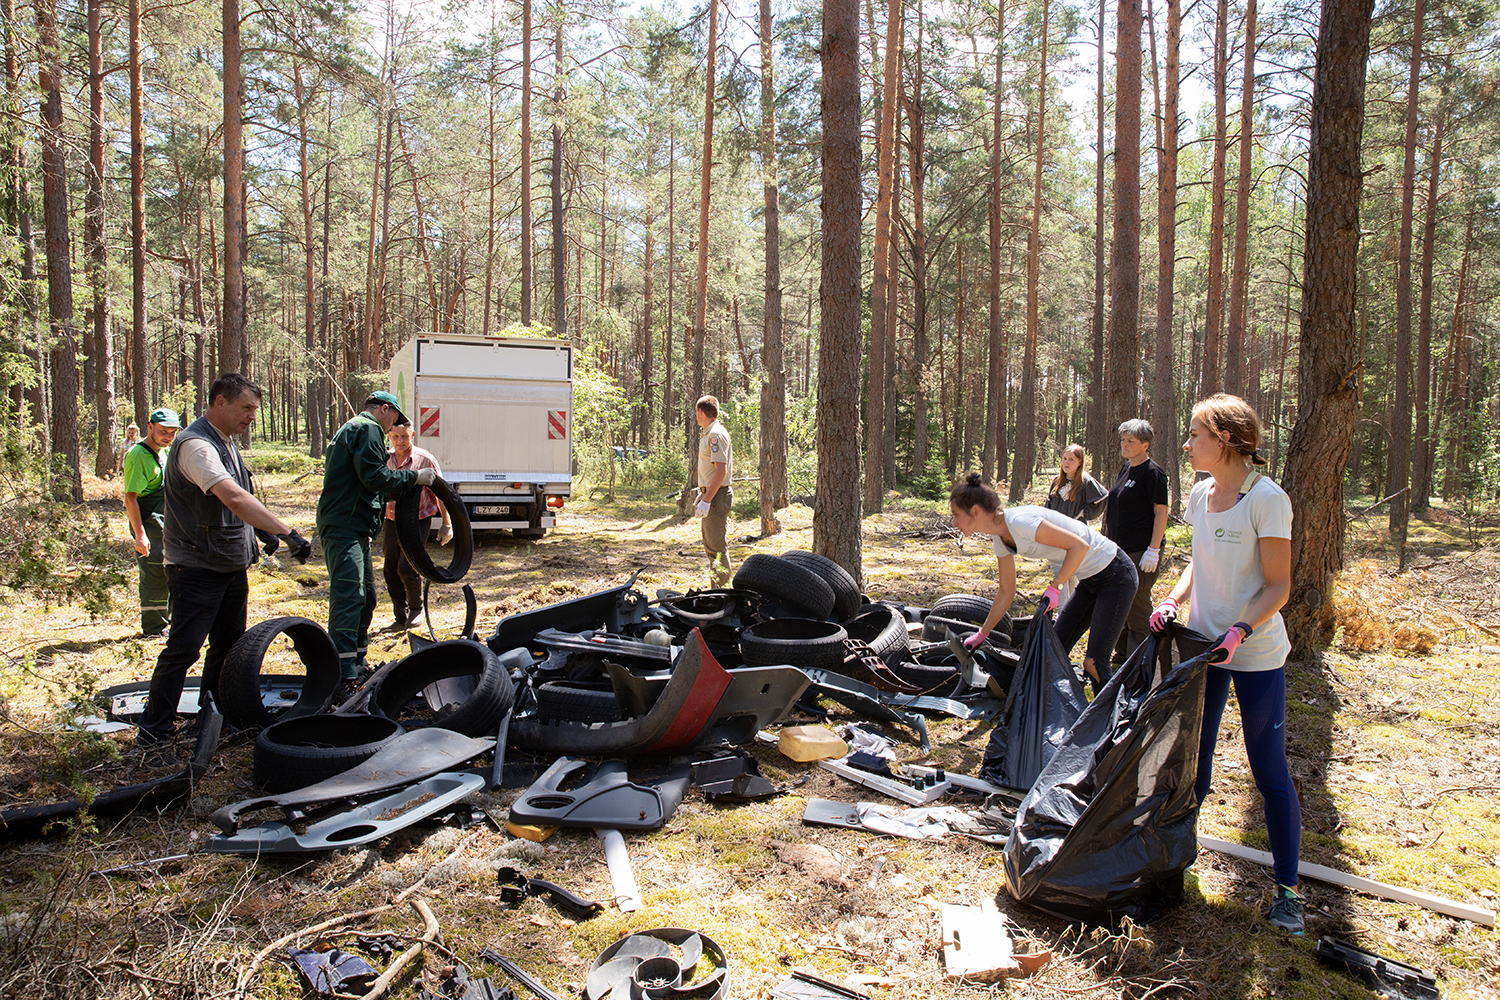 Dzūkijos miško pušynuose sutvarkyti nelegalūs autoservisų atliekų sąvartynai